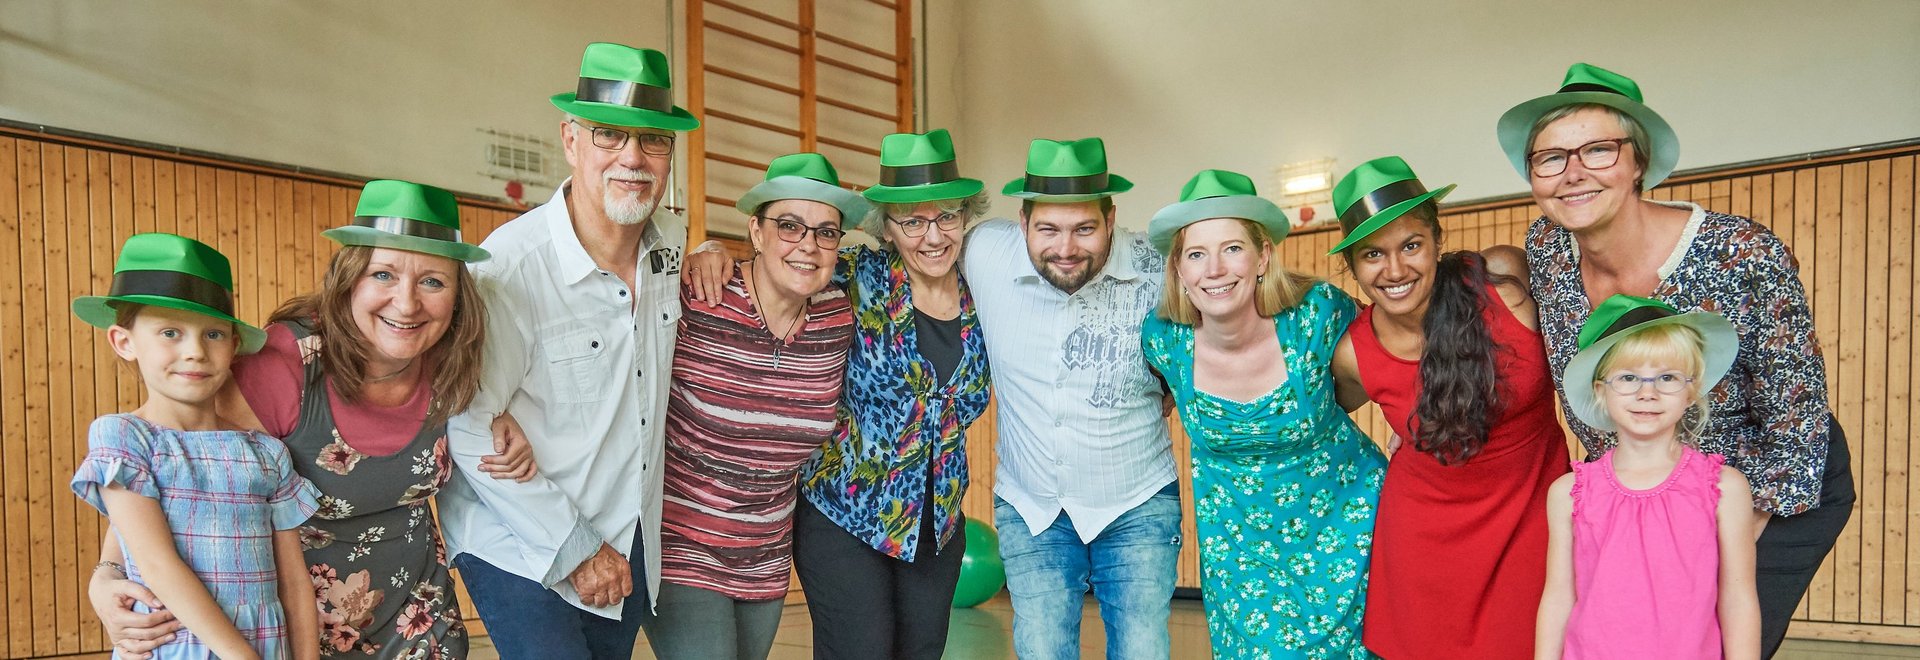 Gruppenbild Menschen mit grünen Hüten